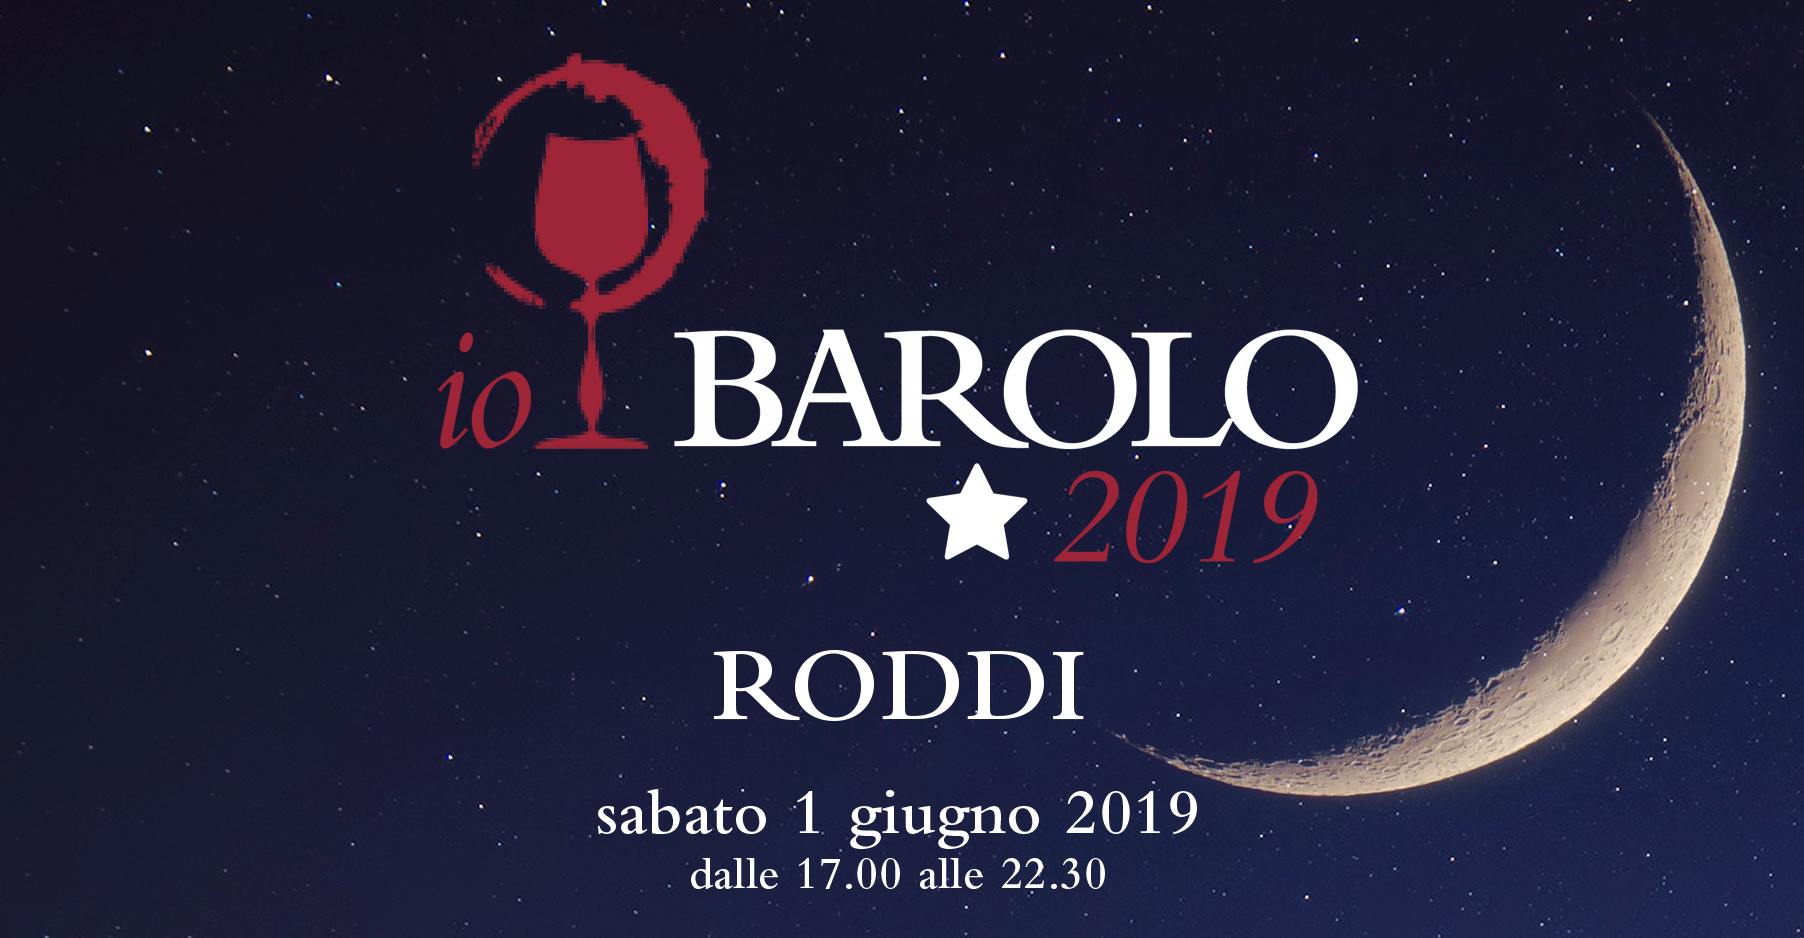 Io, Barolo 2019